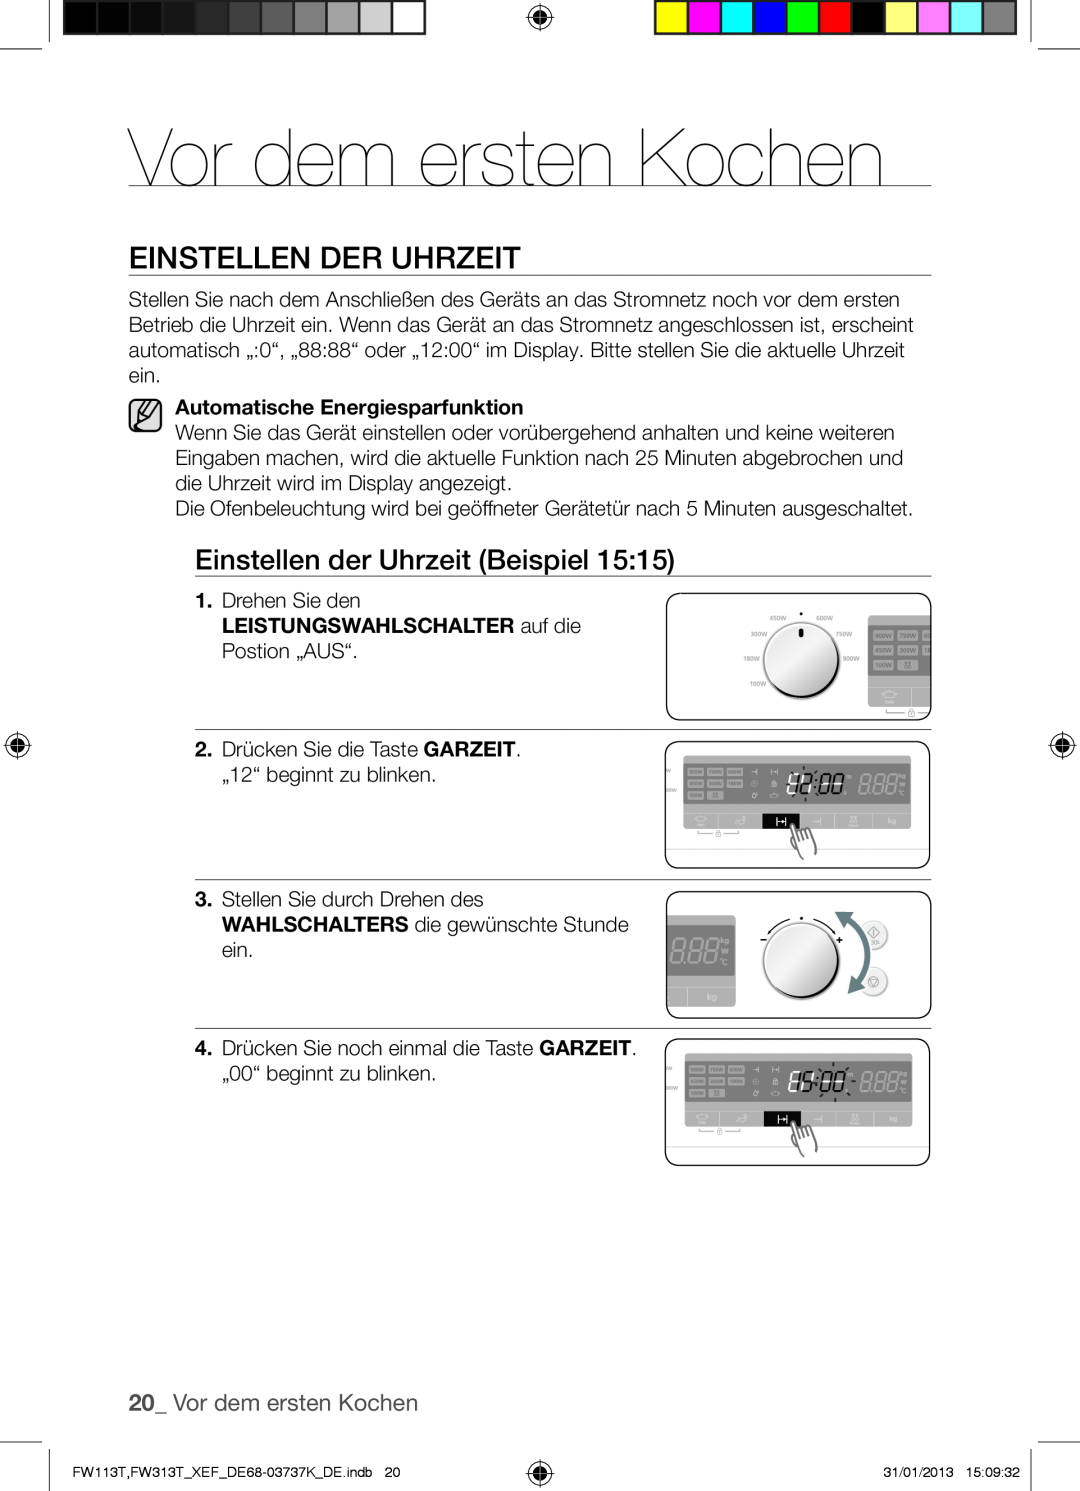 Samsung FW113T002/XEF manual Vor dem ersten Kochen, Einstellen Der Uhrzeit 